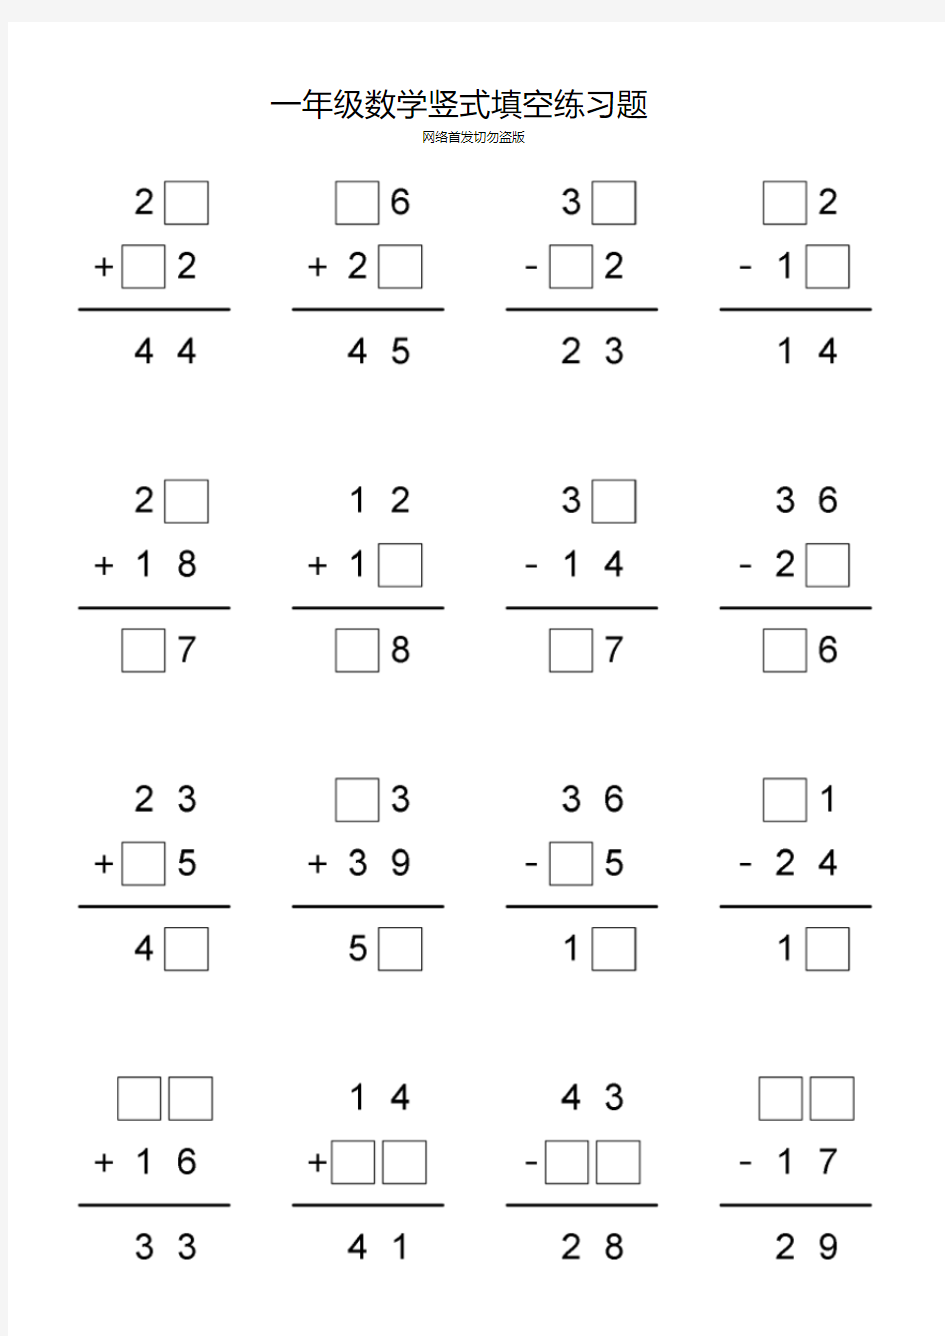 【经典】实验小学一年级数学竖式填空练习题